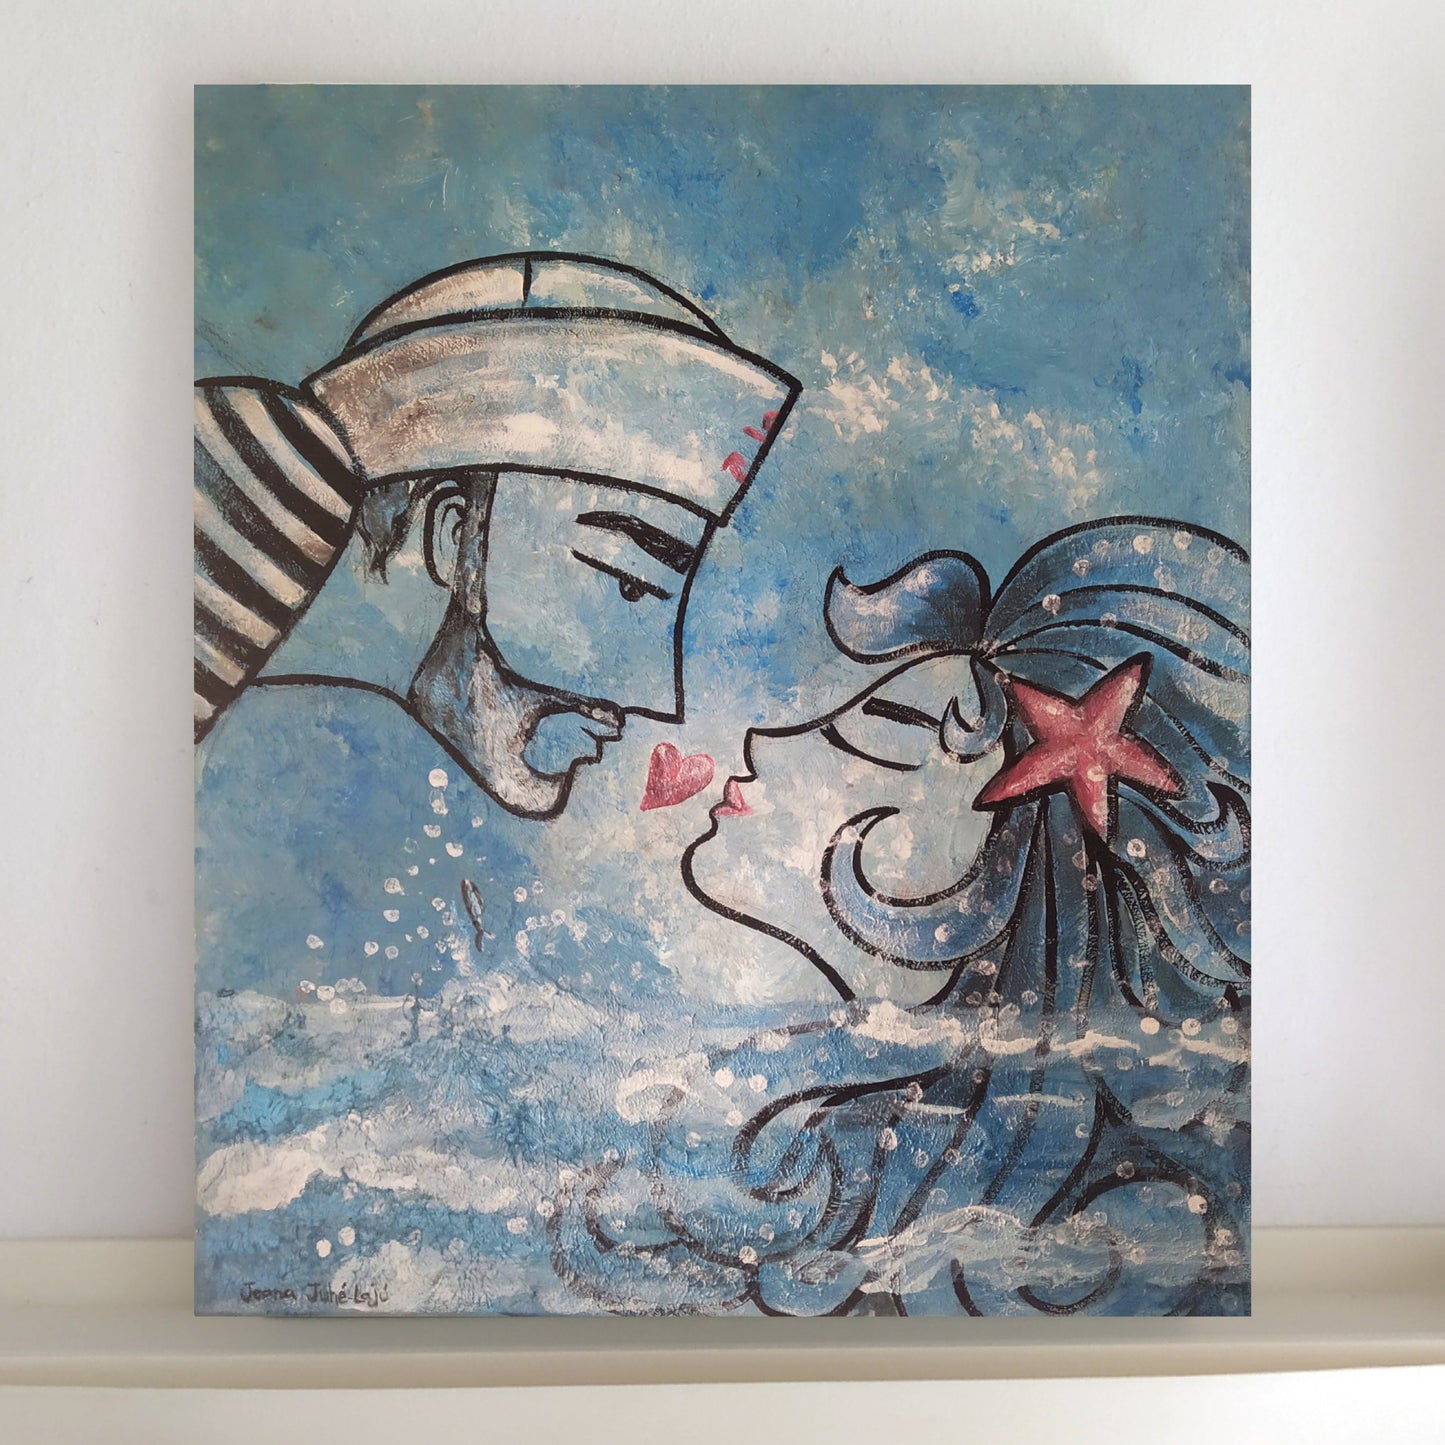 Mermaid and sailor, acrylic paint on canvas.